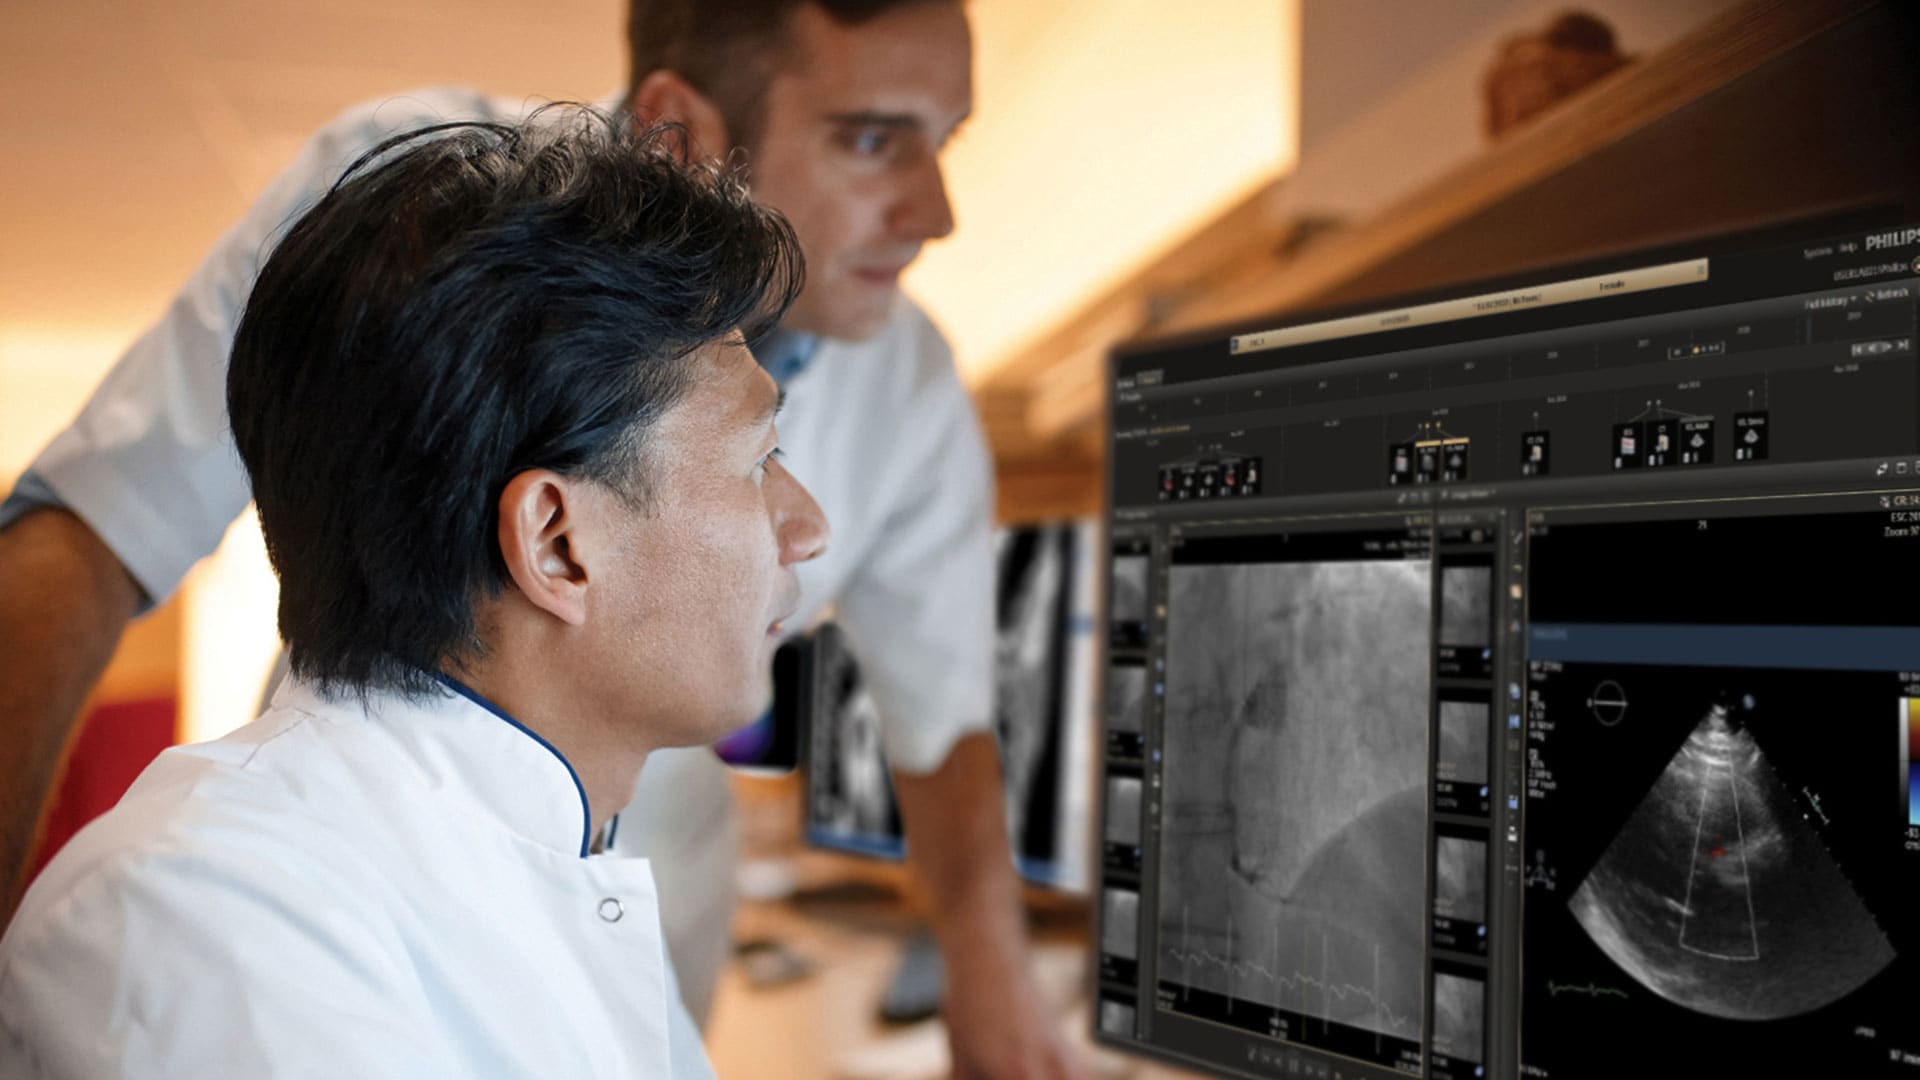 Philips lance la dernière version d'IntelliSpace Cardiovascular, qui comprend désormais des fonctions de reporting pédiatrique étendues et une intégration au système Philips Forcare